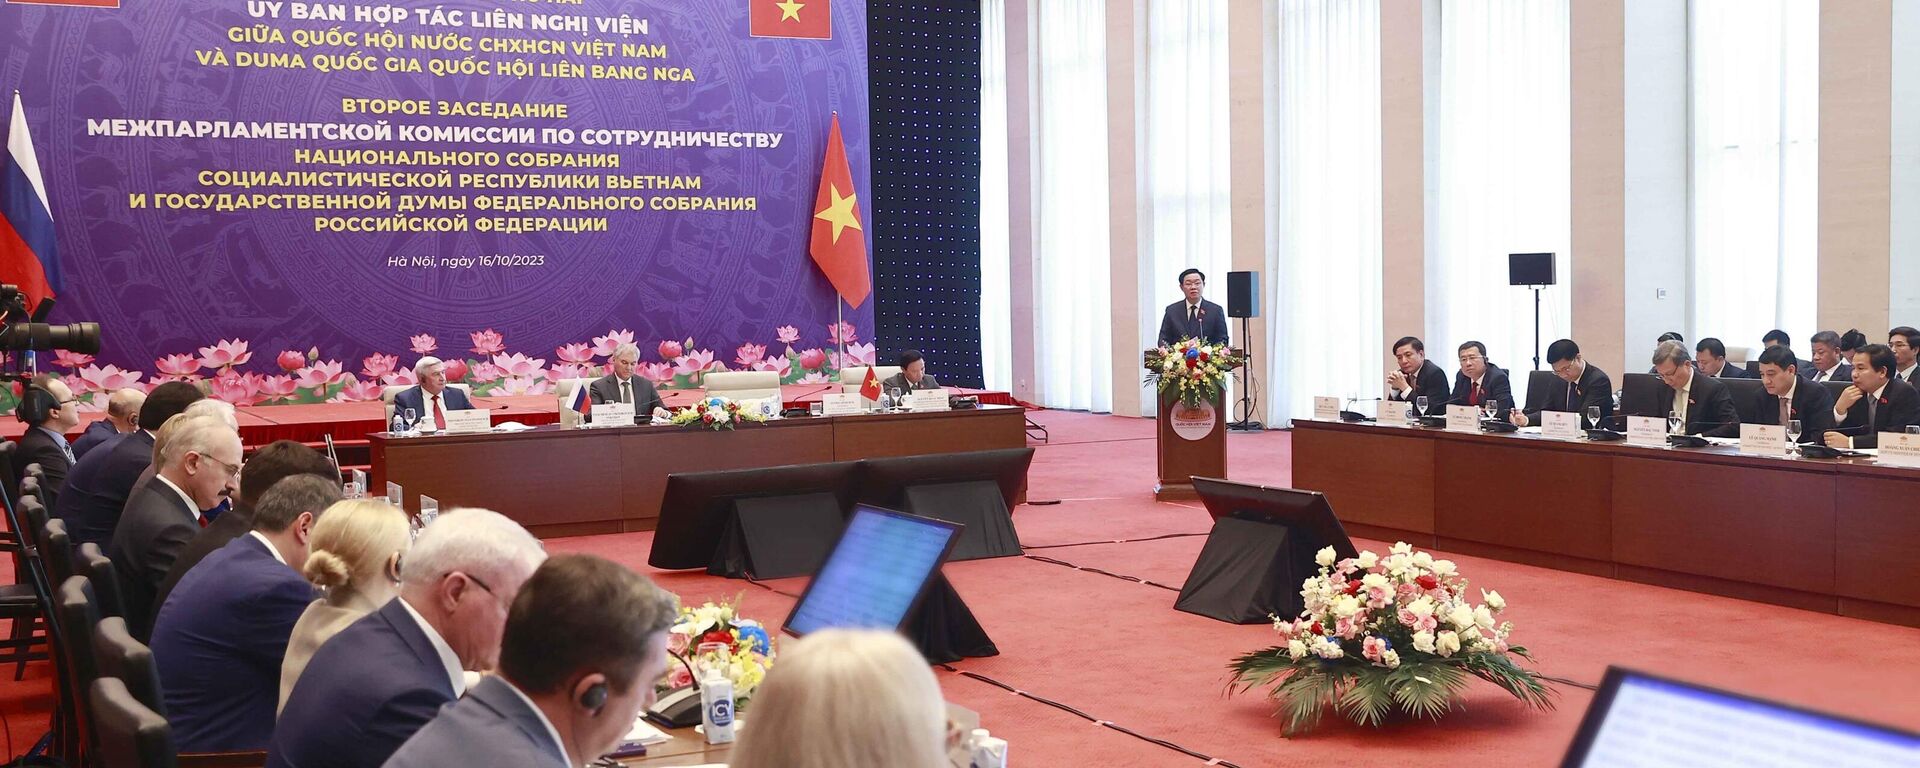 Hai CTQH chủ trì Phiên họp lần thứ hai của Uỷ ban hợp tác liên nghị viện giữa Quốc hội Việt Nam và Duma Quốc gia Quốc hội Liên bang Nga - Sputnik Việt Nam, 1920, 16.10.2023